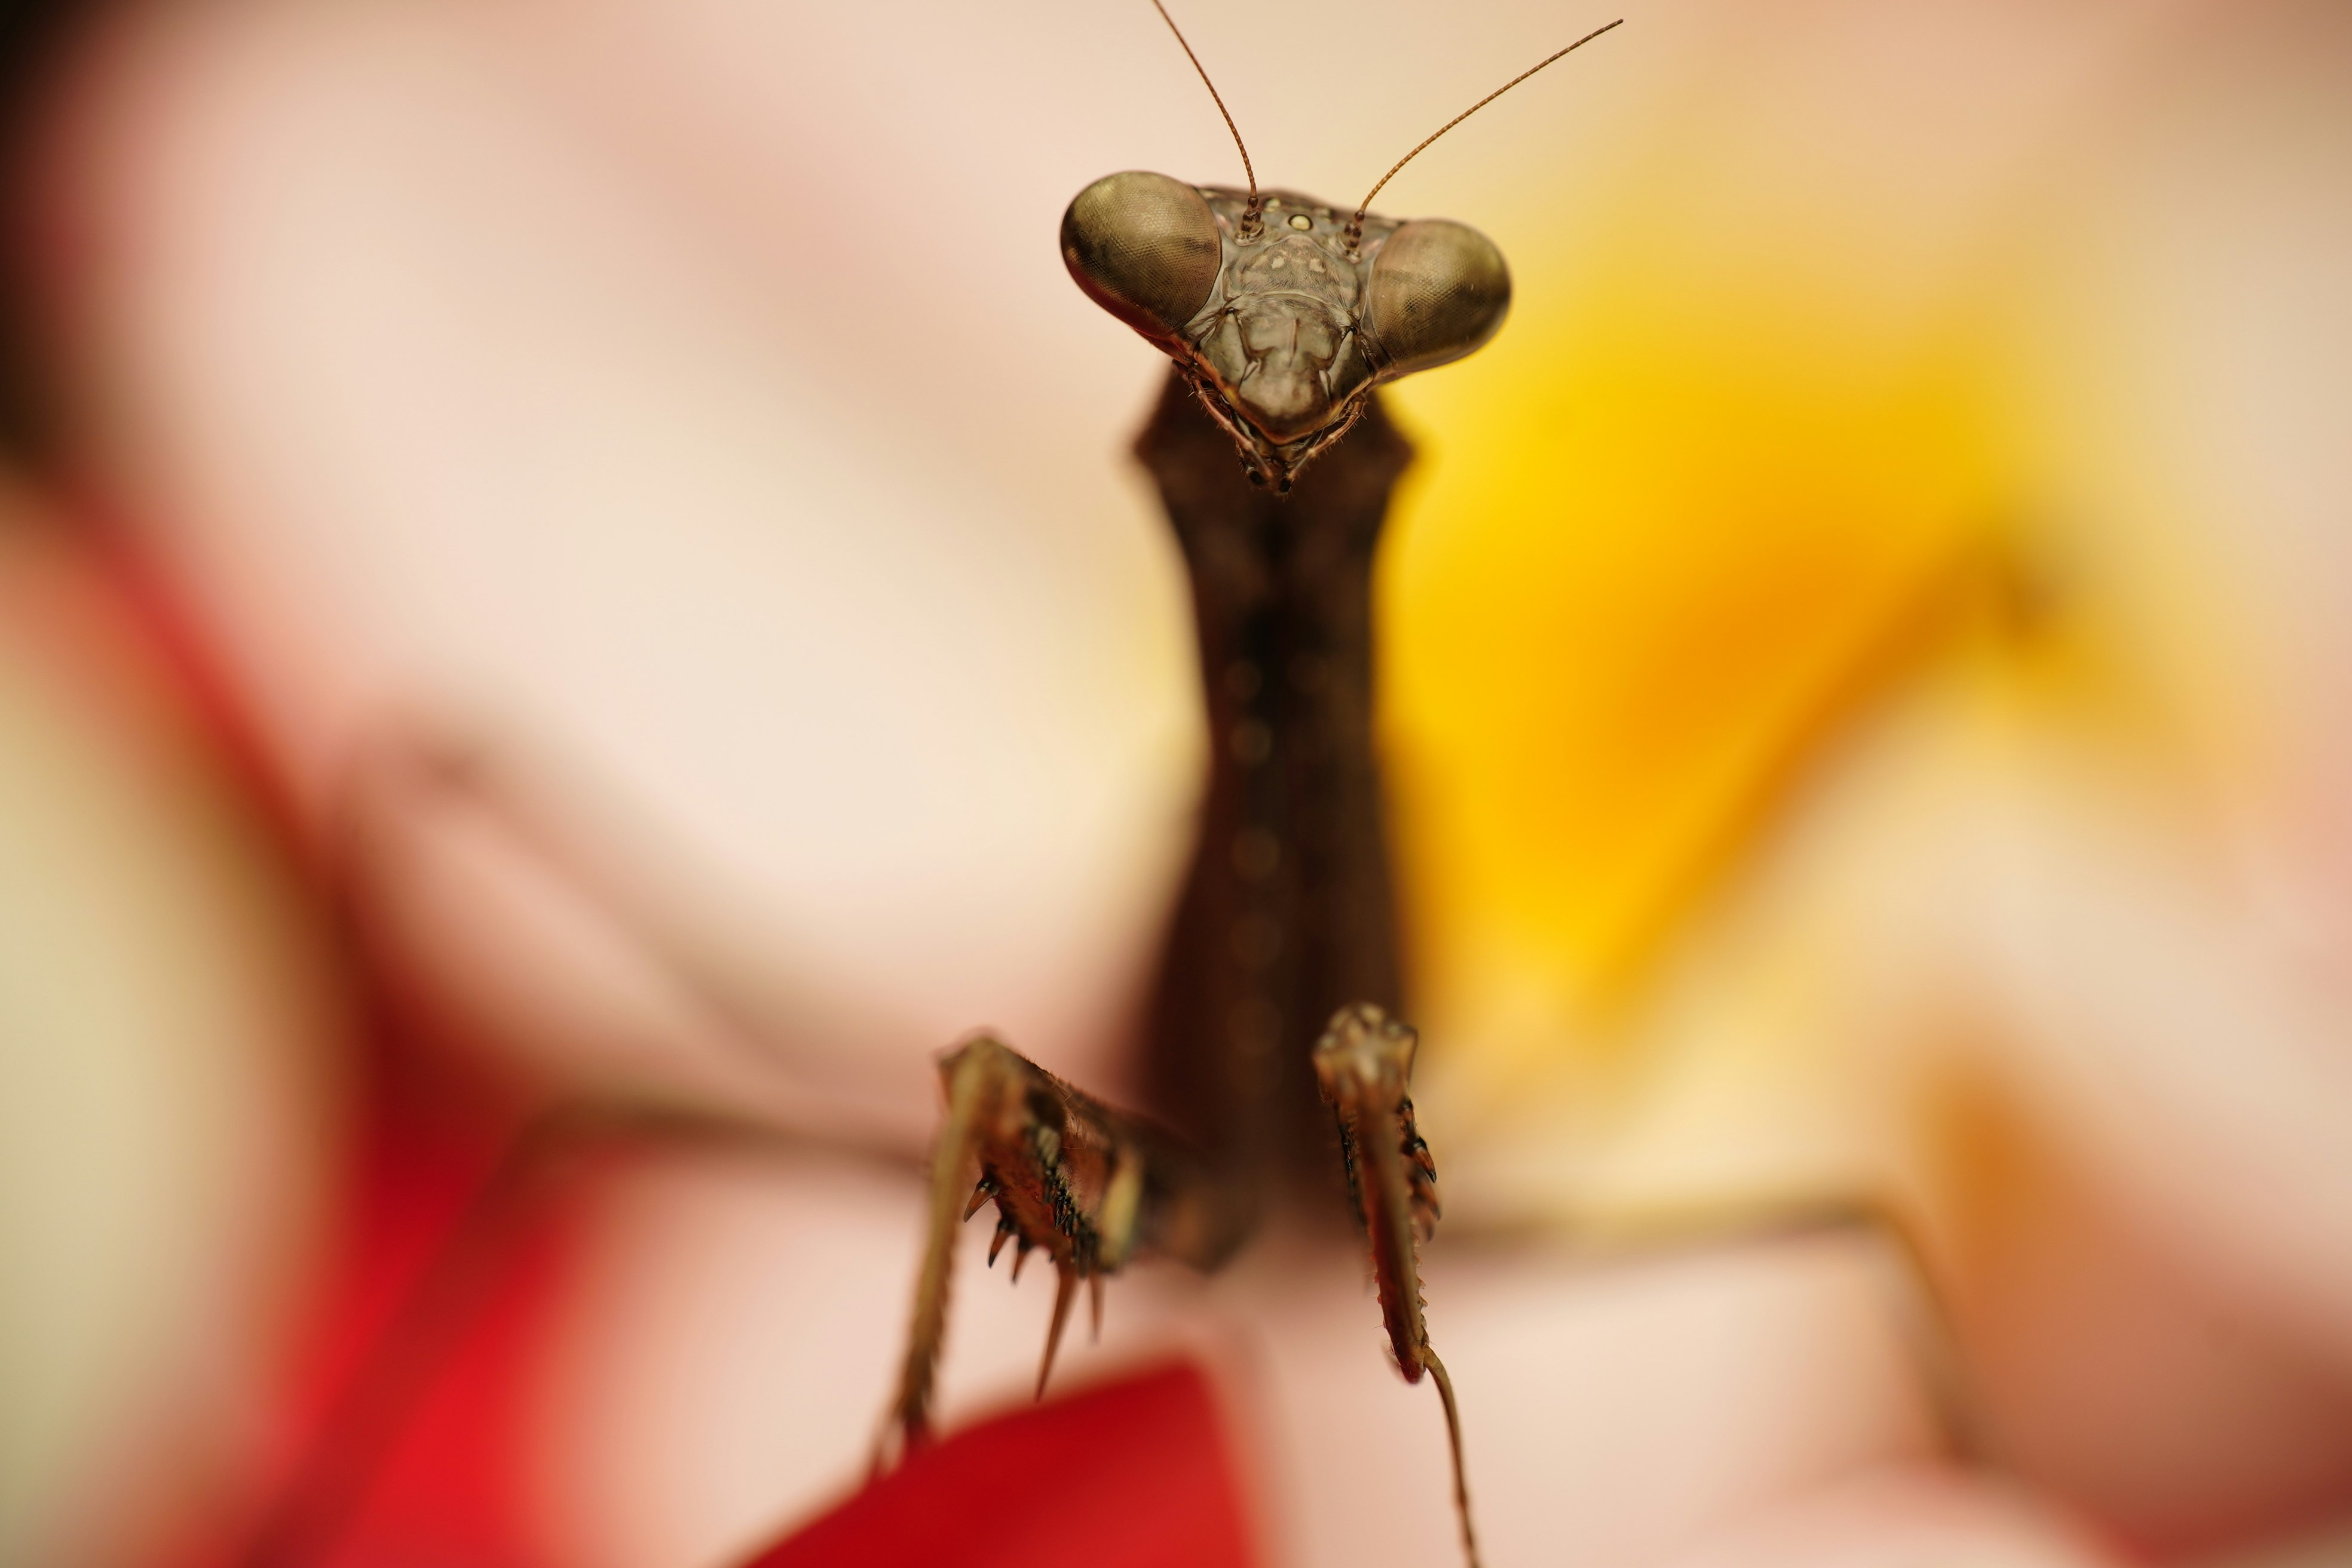 brown praying mantis on orange surface in close up photography